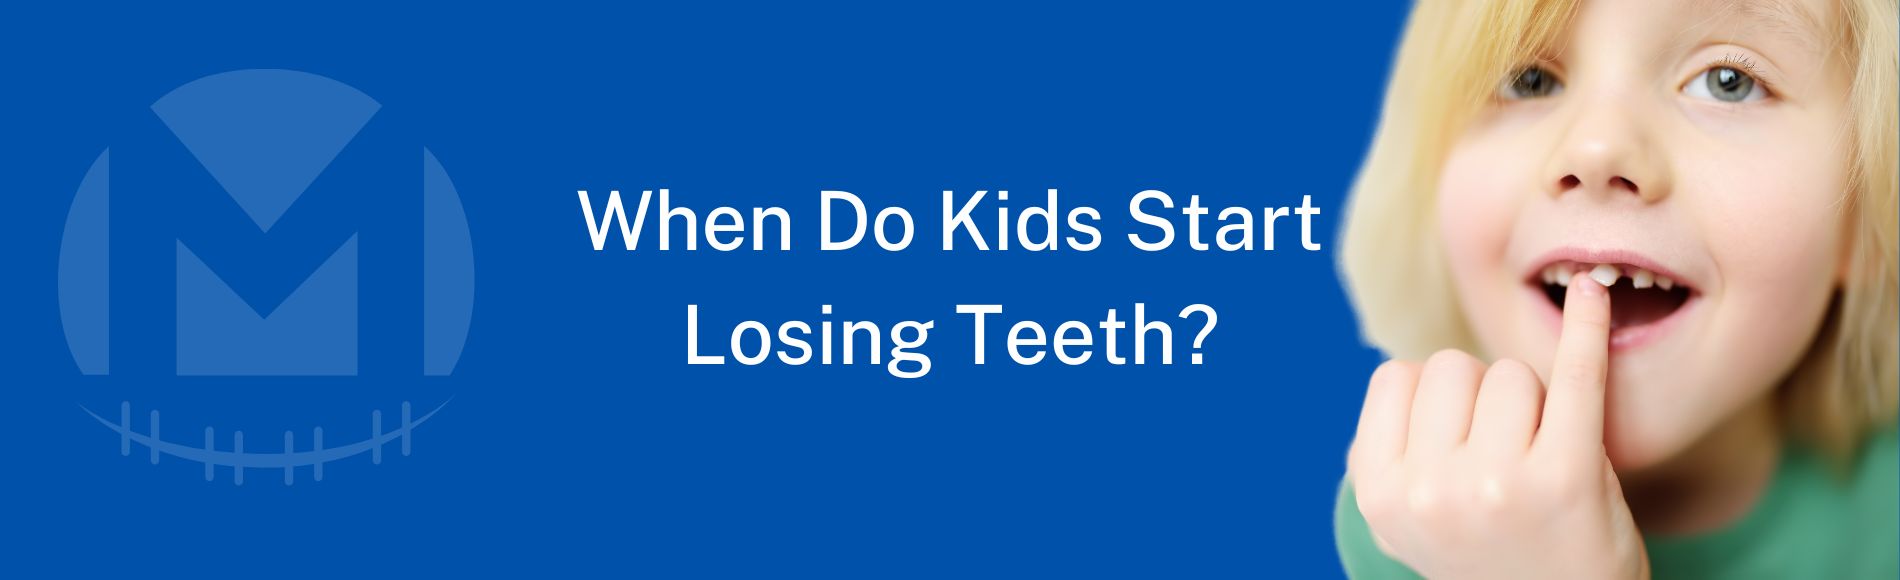 When Do Kids Start Losing Teeth